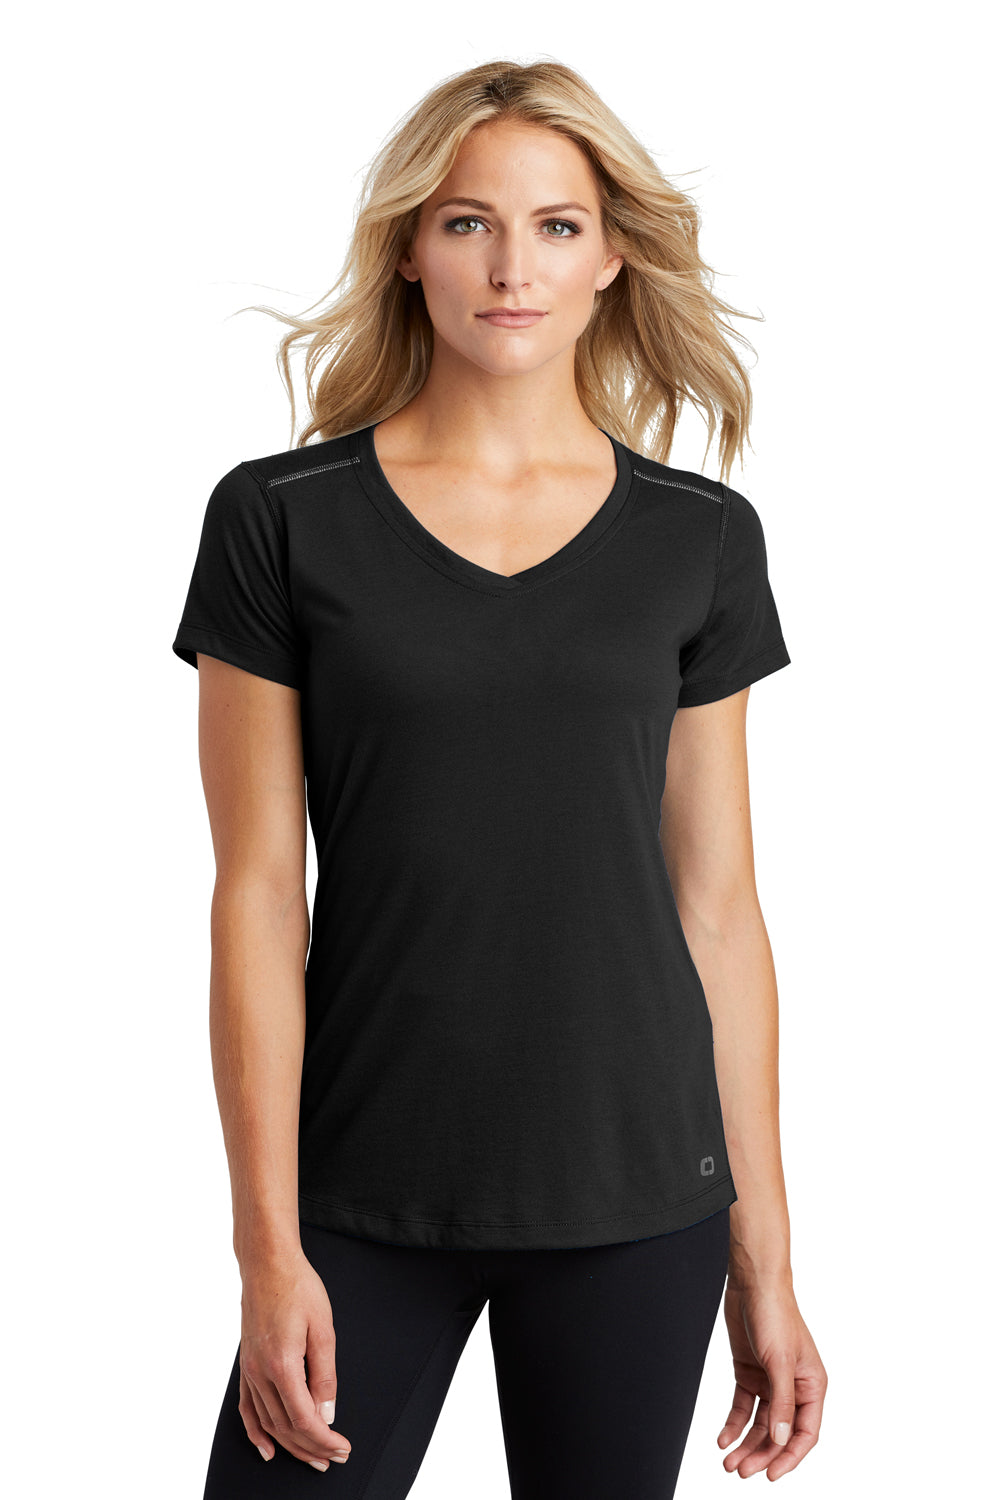 Ogio LOE337 Womens Endurance Peak Jersey Moisture Wicking Short Sleeve V-Neck T-Shirt Black Front